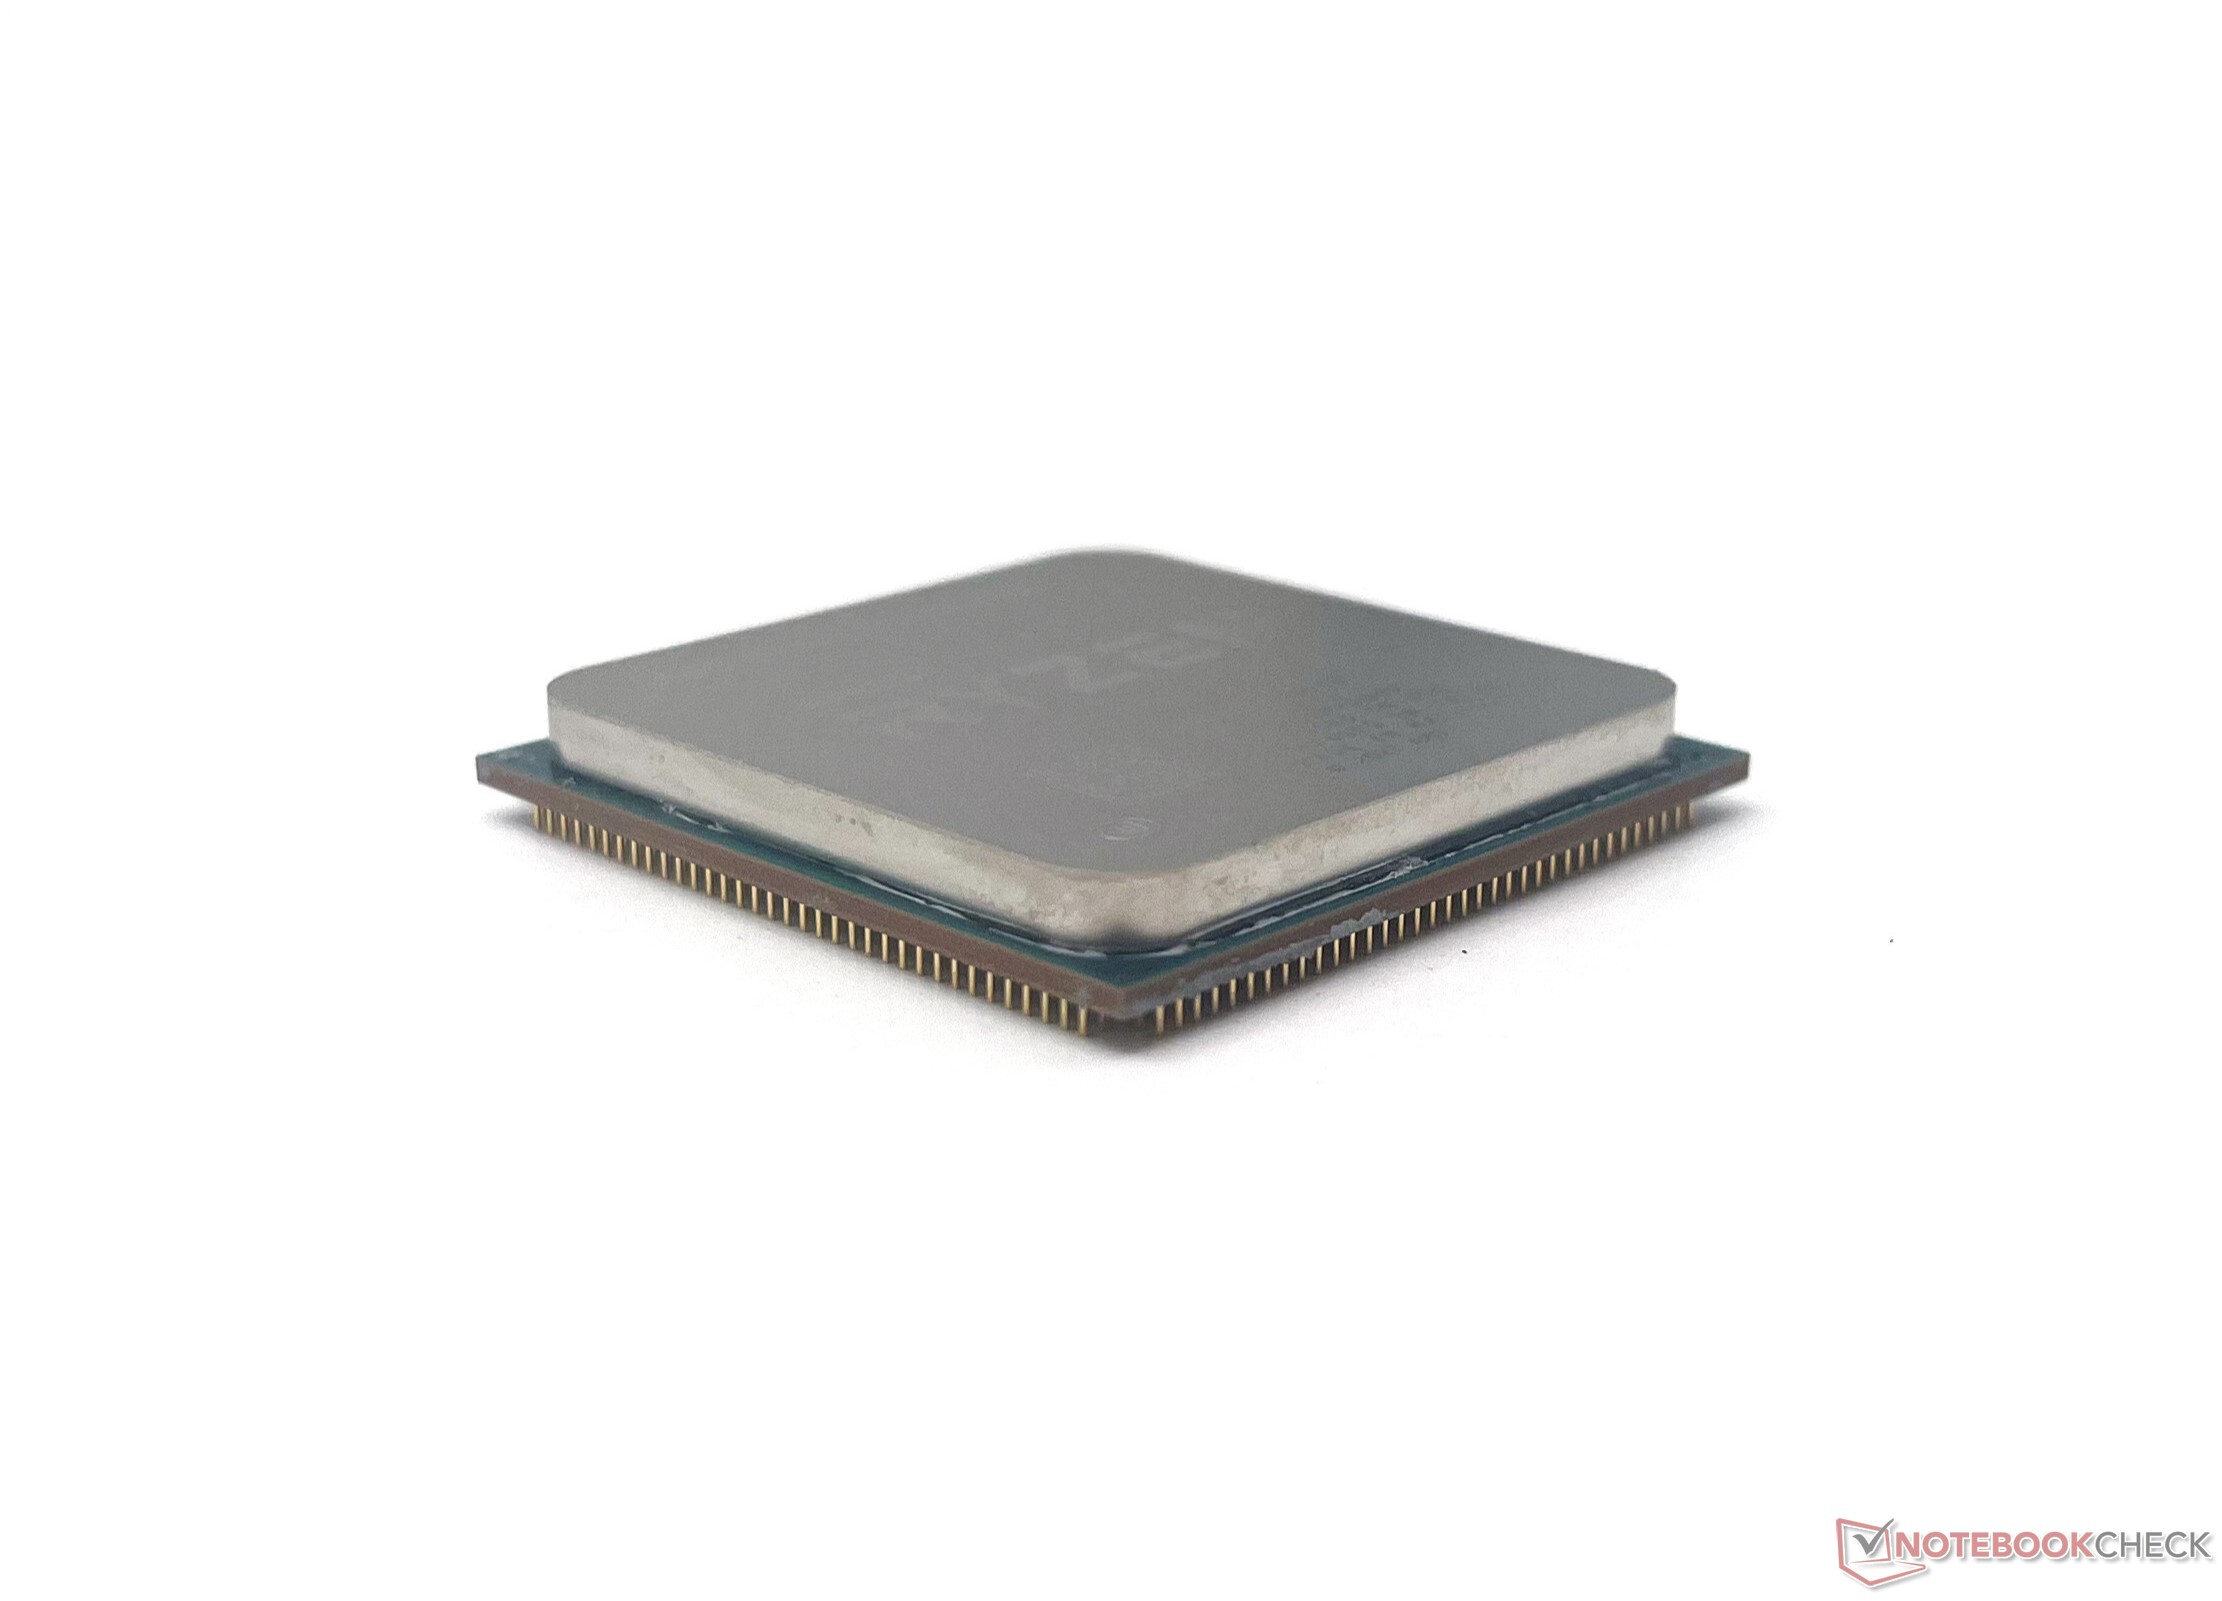 The new (11400F) vs. older (10400F) Intel Core i5 processor